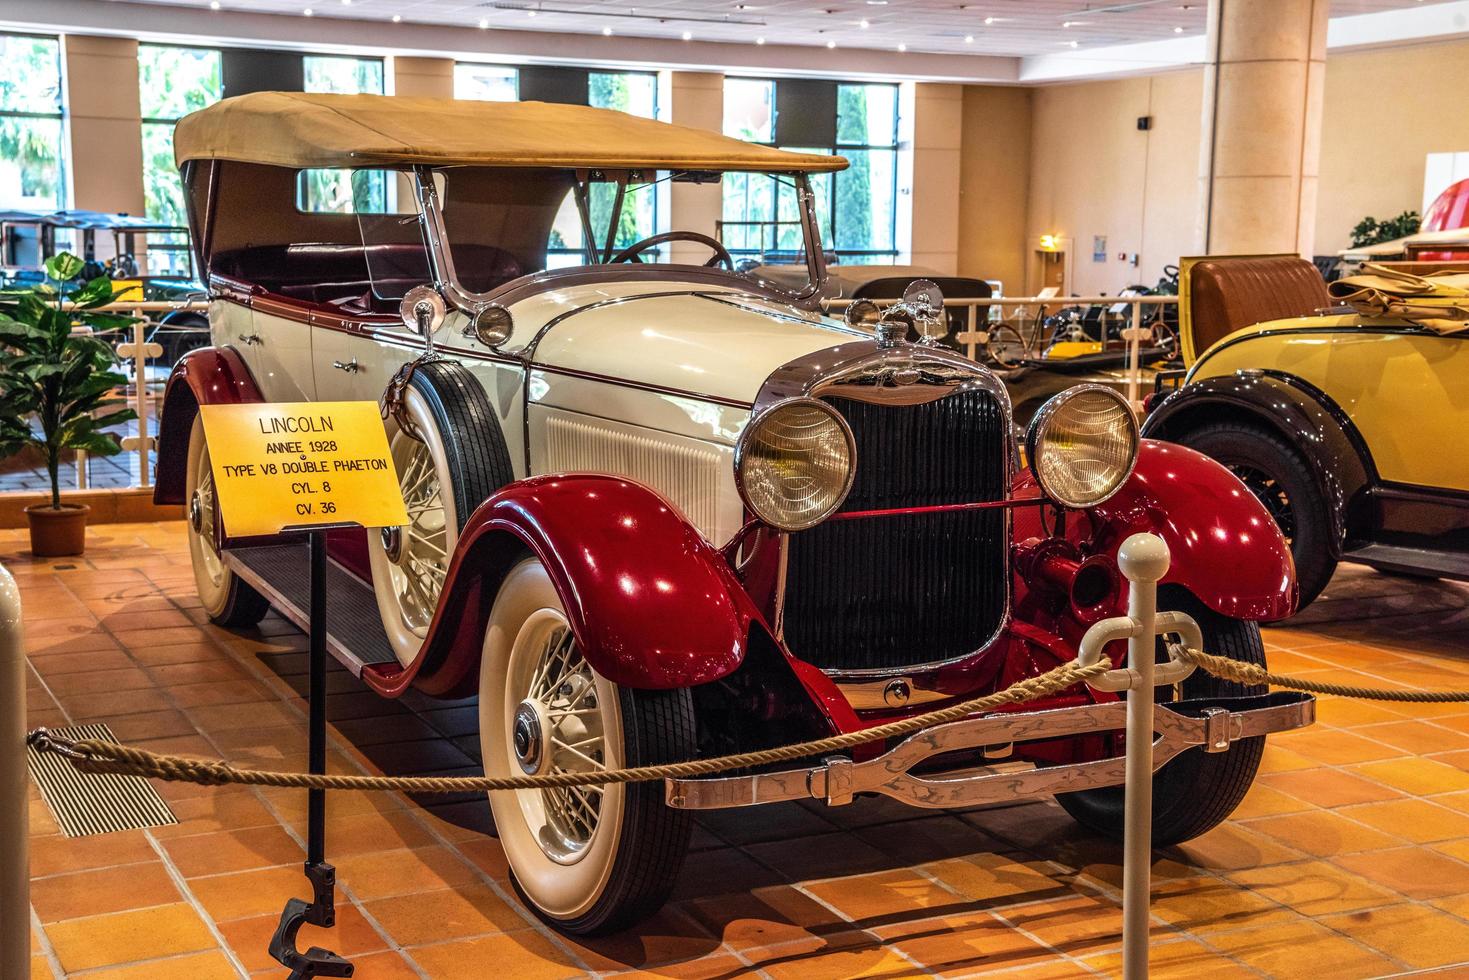 fontvieille, mônaco - junho de 2017 branco vermelho lincoln v8 duplo phaeton 1928 no museu de coleção de carros top de mônaco foto